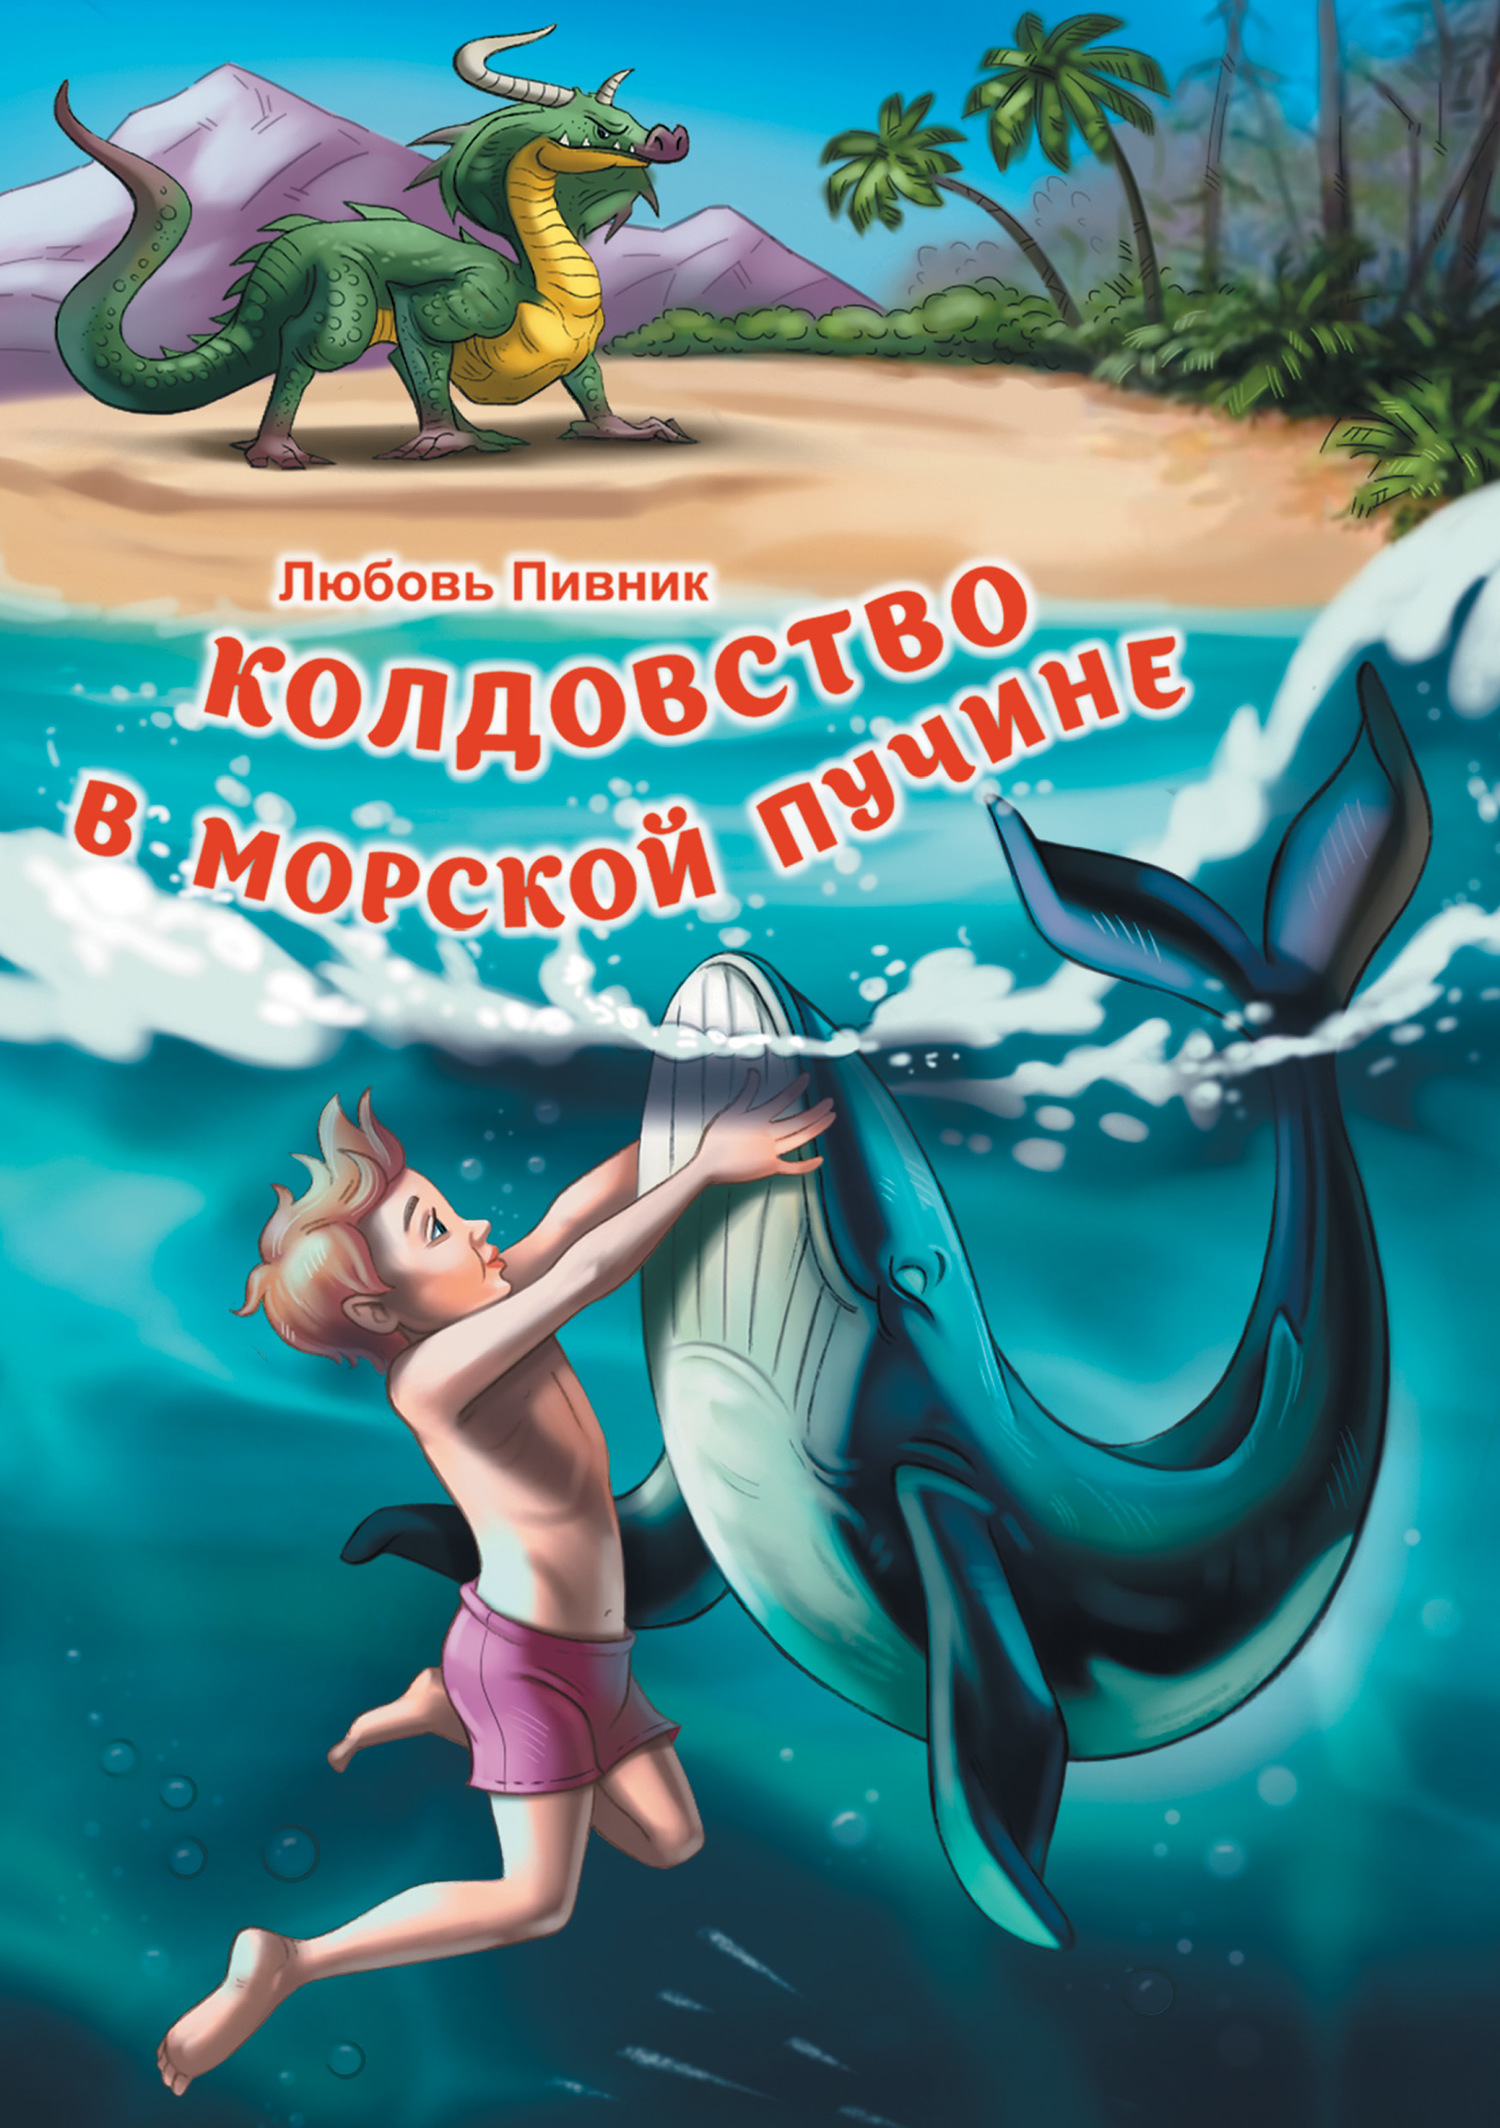 Пивник Любовь - Колдовство в морской пучине скачать бесплатно